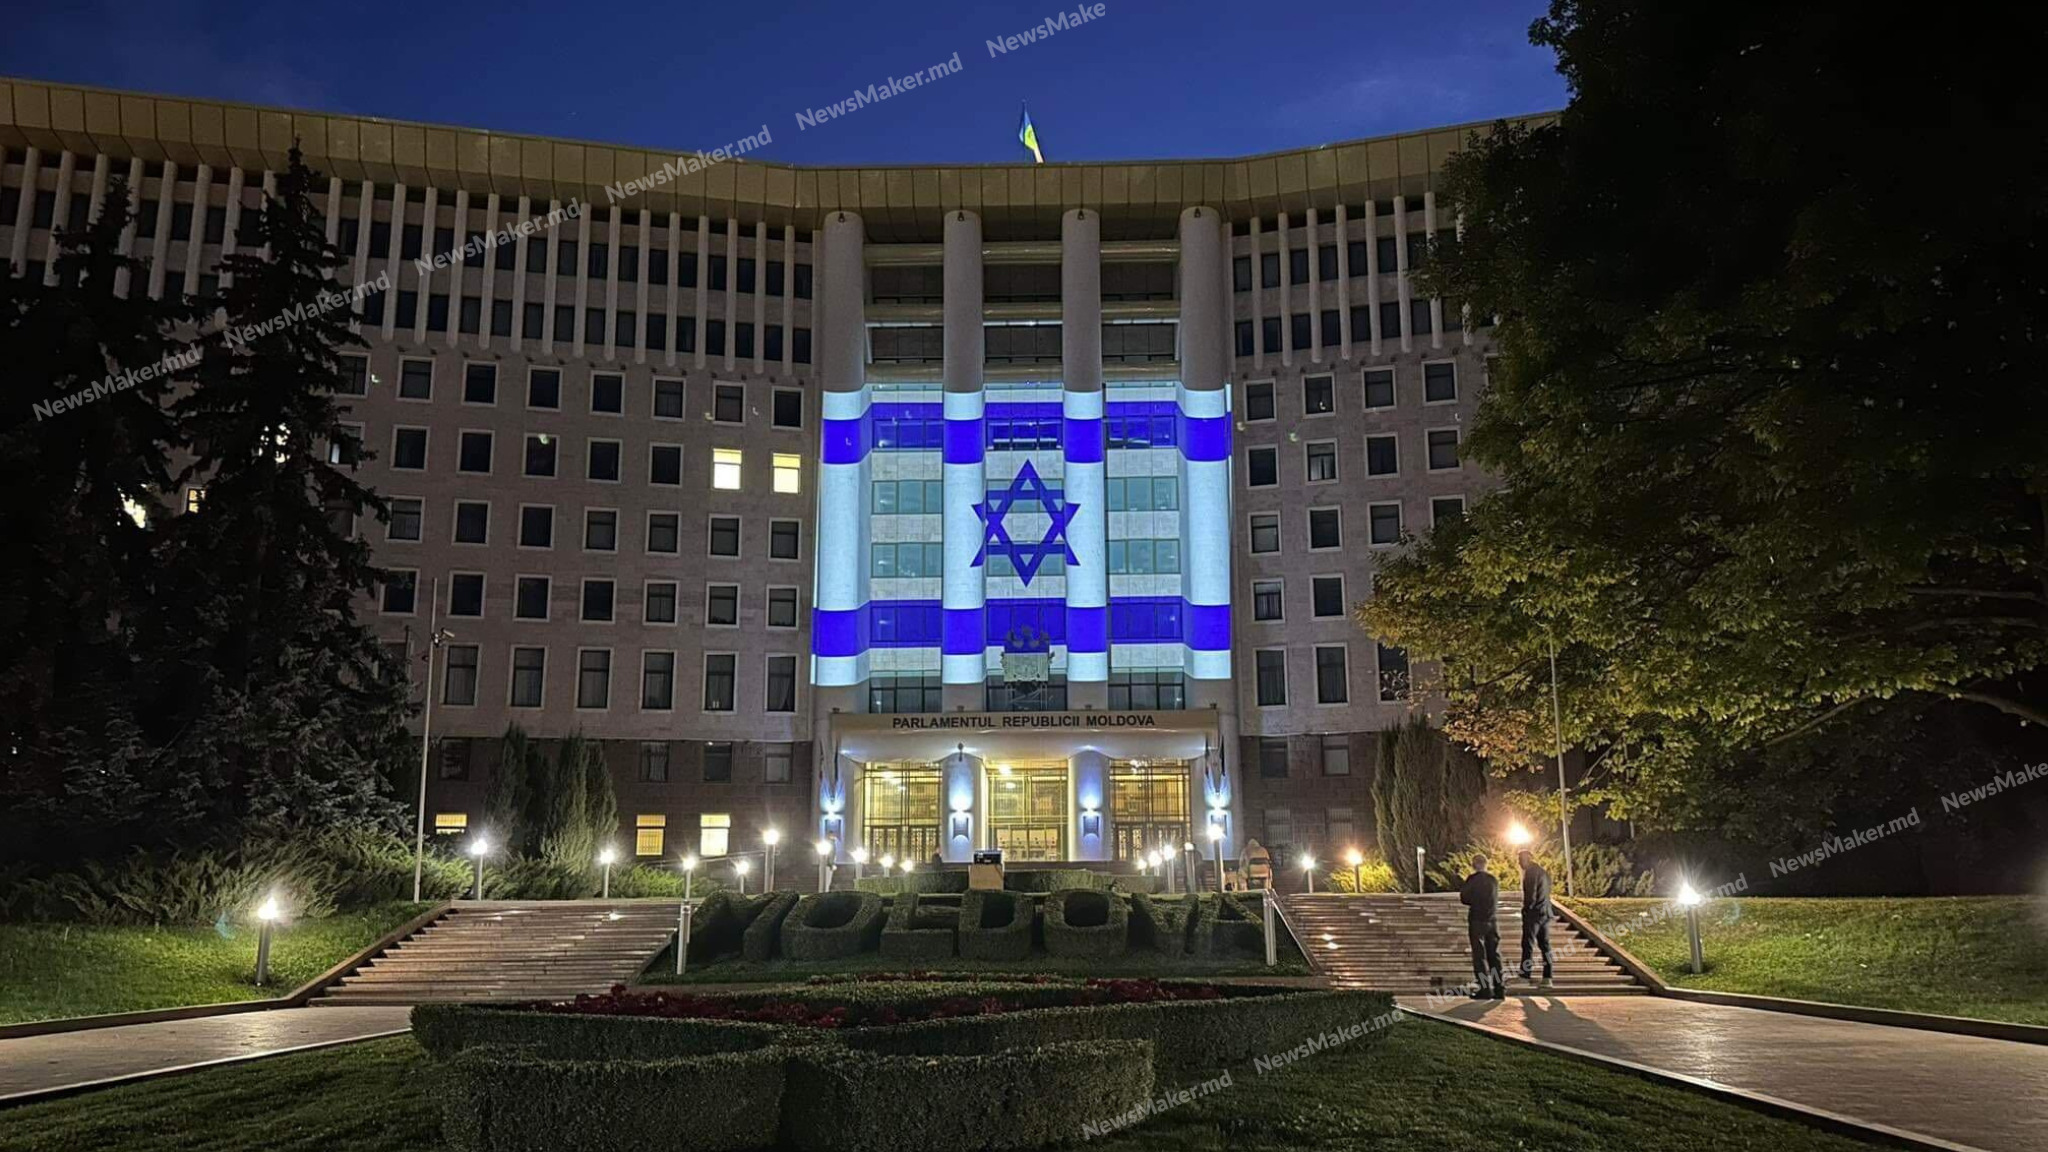 FOTO Parlamentul Republicii Moldova, iluminat în culorile drapelului Israelului: „În semn de solidaritate”